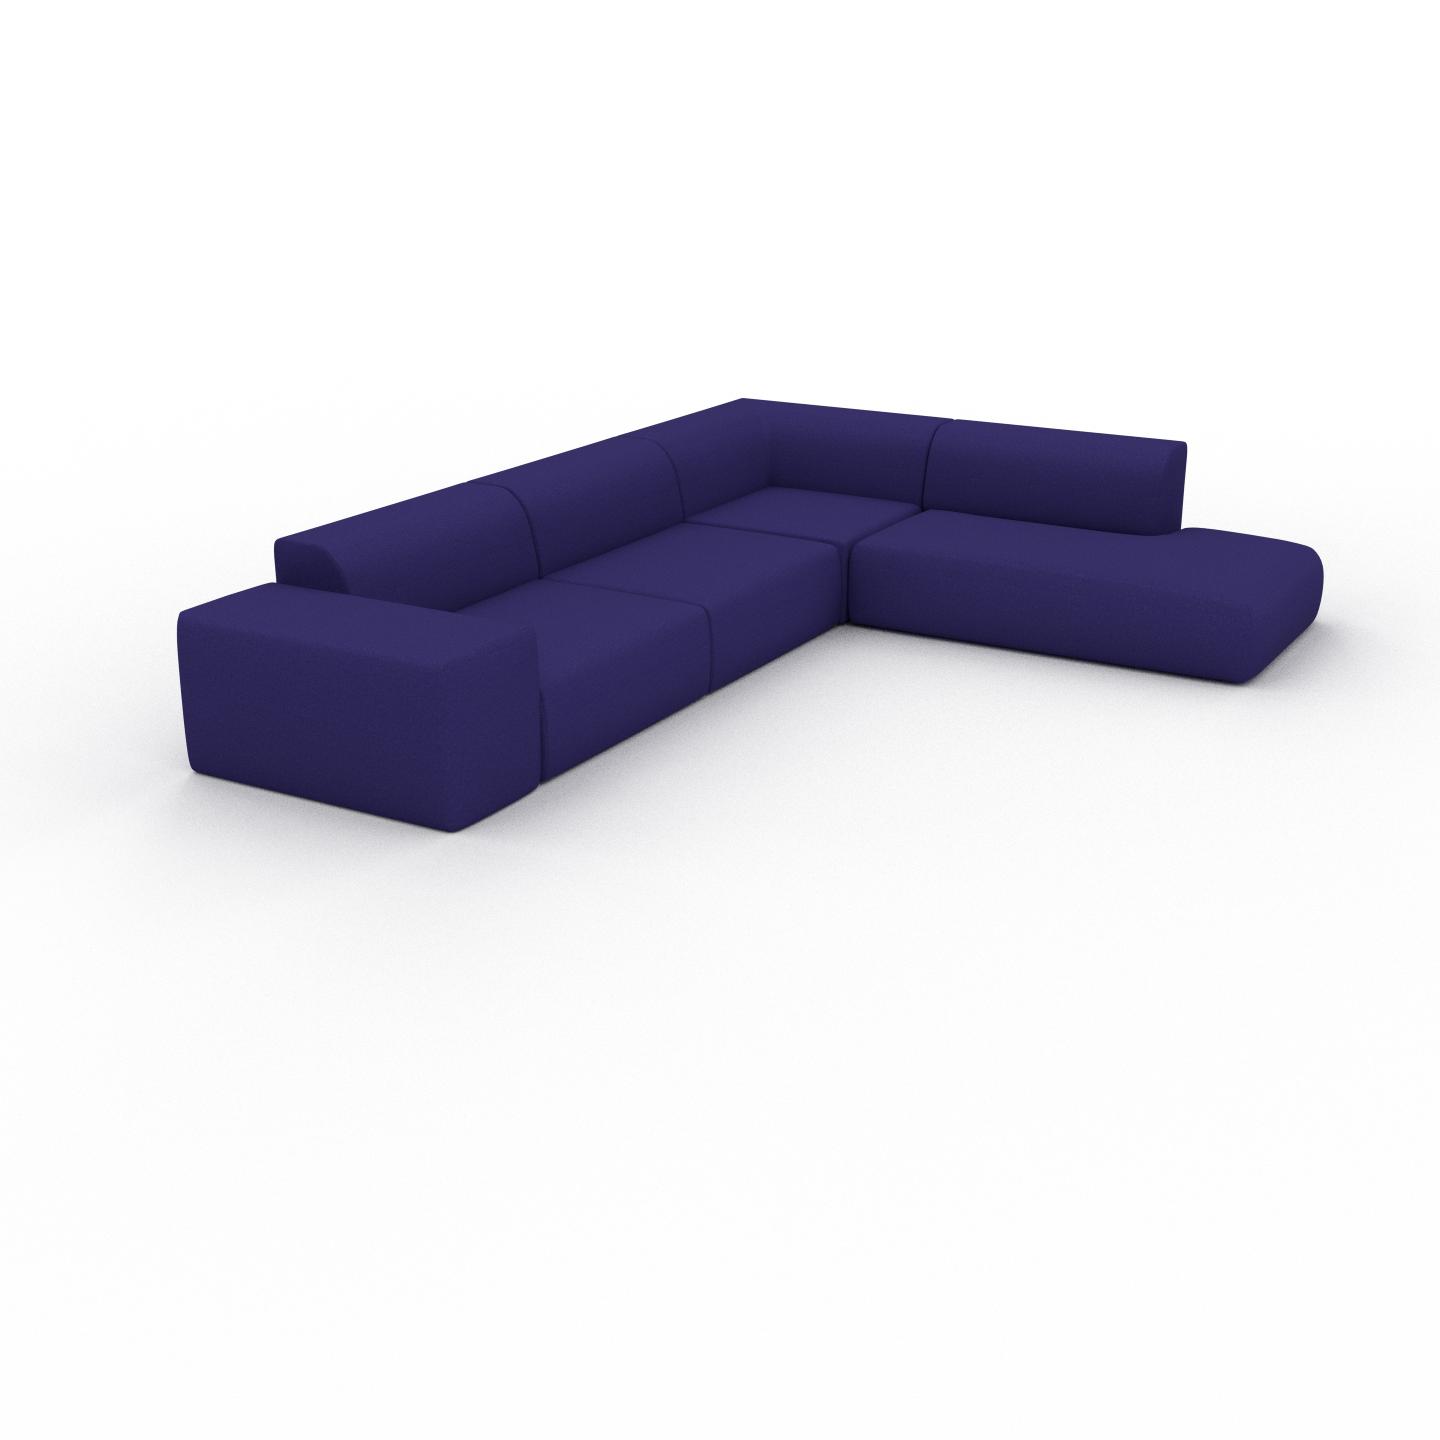 MYCS Ecksofa Tintenblau - Flexible Designer-Polsterecke, L-Form: Beste Qualität, einzigartiges Design - 267 x 72 x 353 cm, konfigurierbar